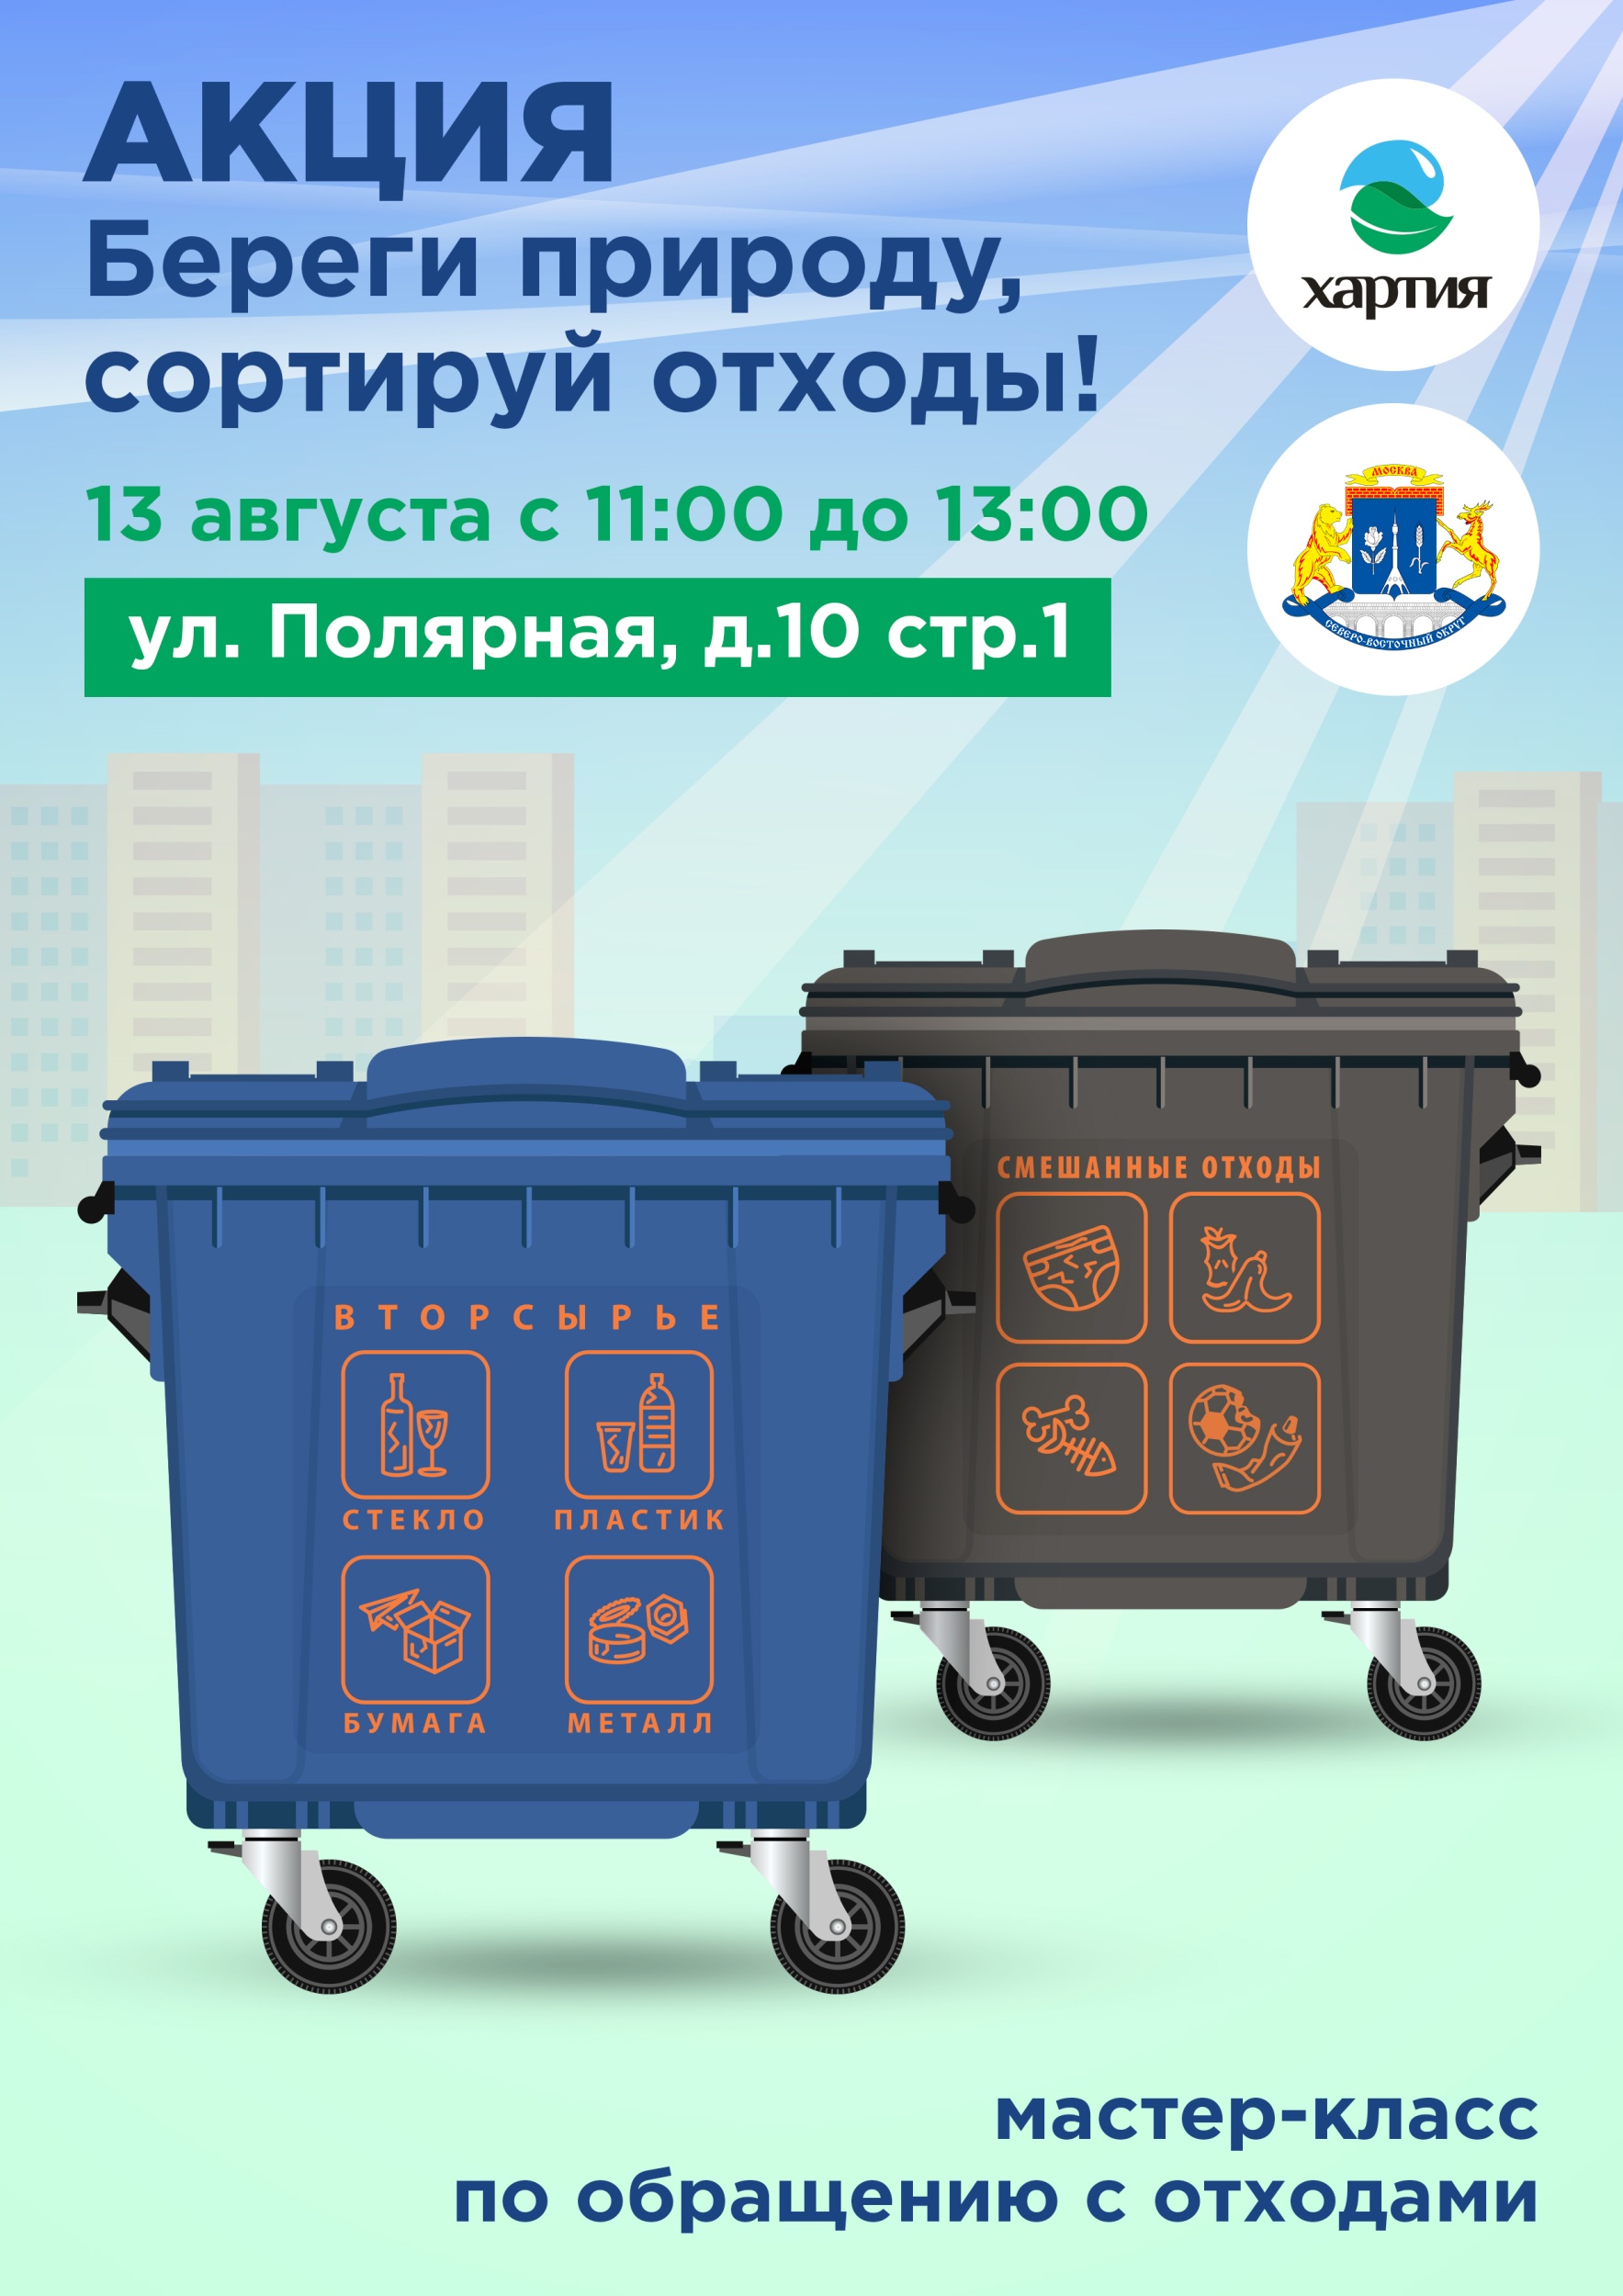 13 августа акция «Береги природу, сортируй отходы!»